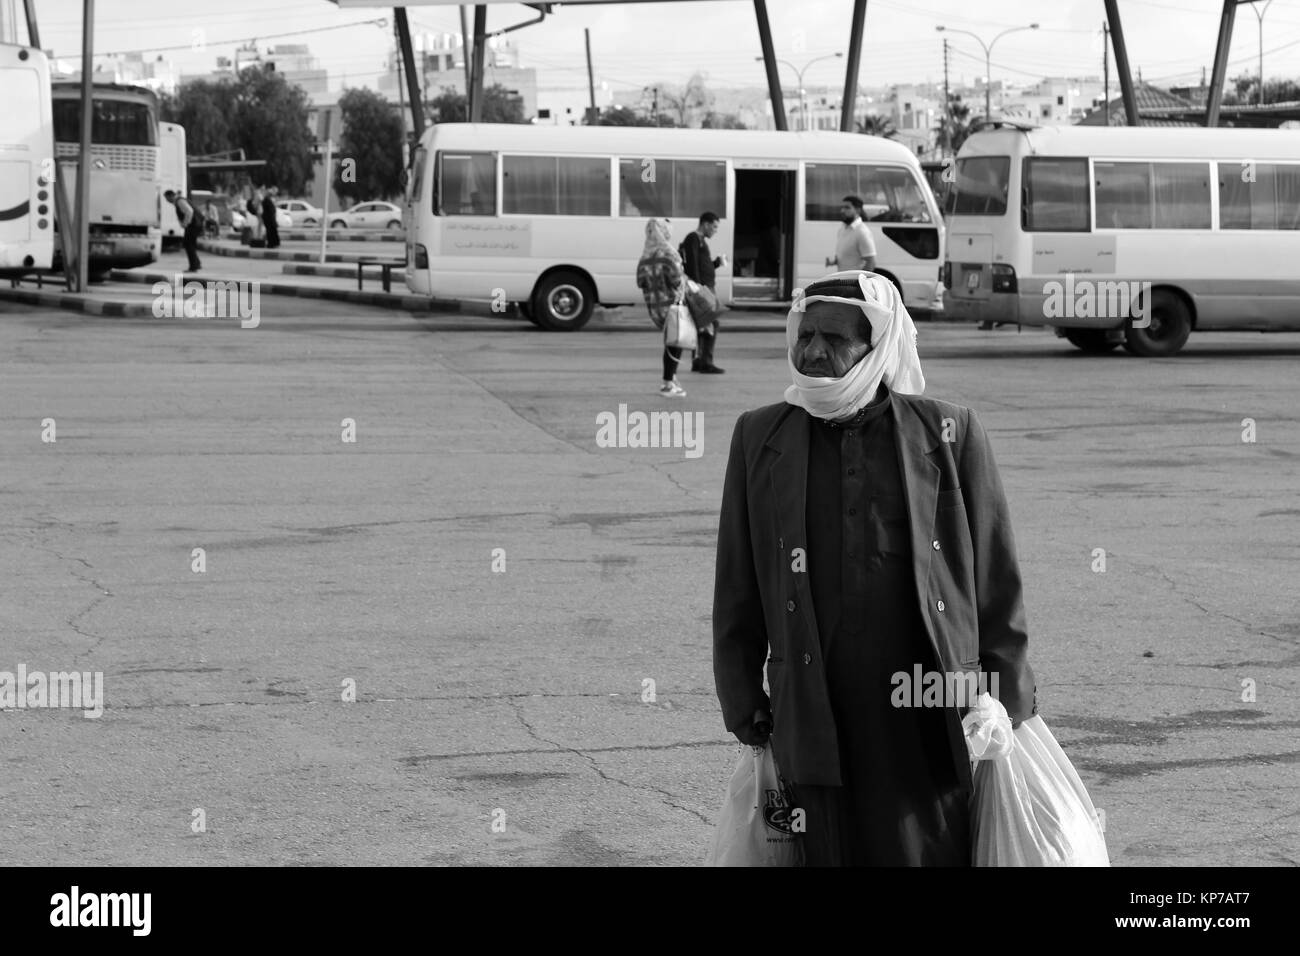 La haute tenue arabe à l'arrêt de bus - 20/05/2017 - Jordanie / Amman - Sguardi Aridi par Ali Raffaele Matar tourné en mai 2017 - l'homme errant Mélancolique Banque D'Images